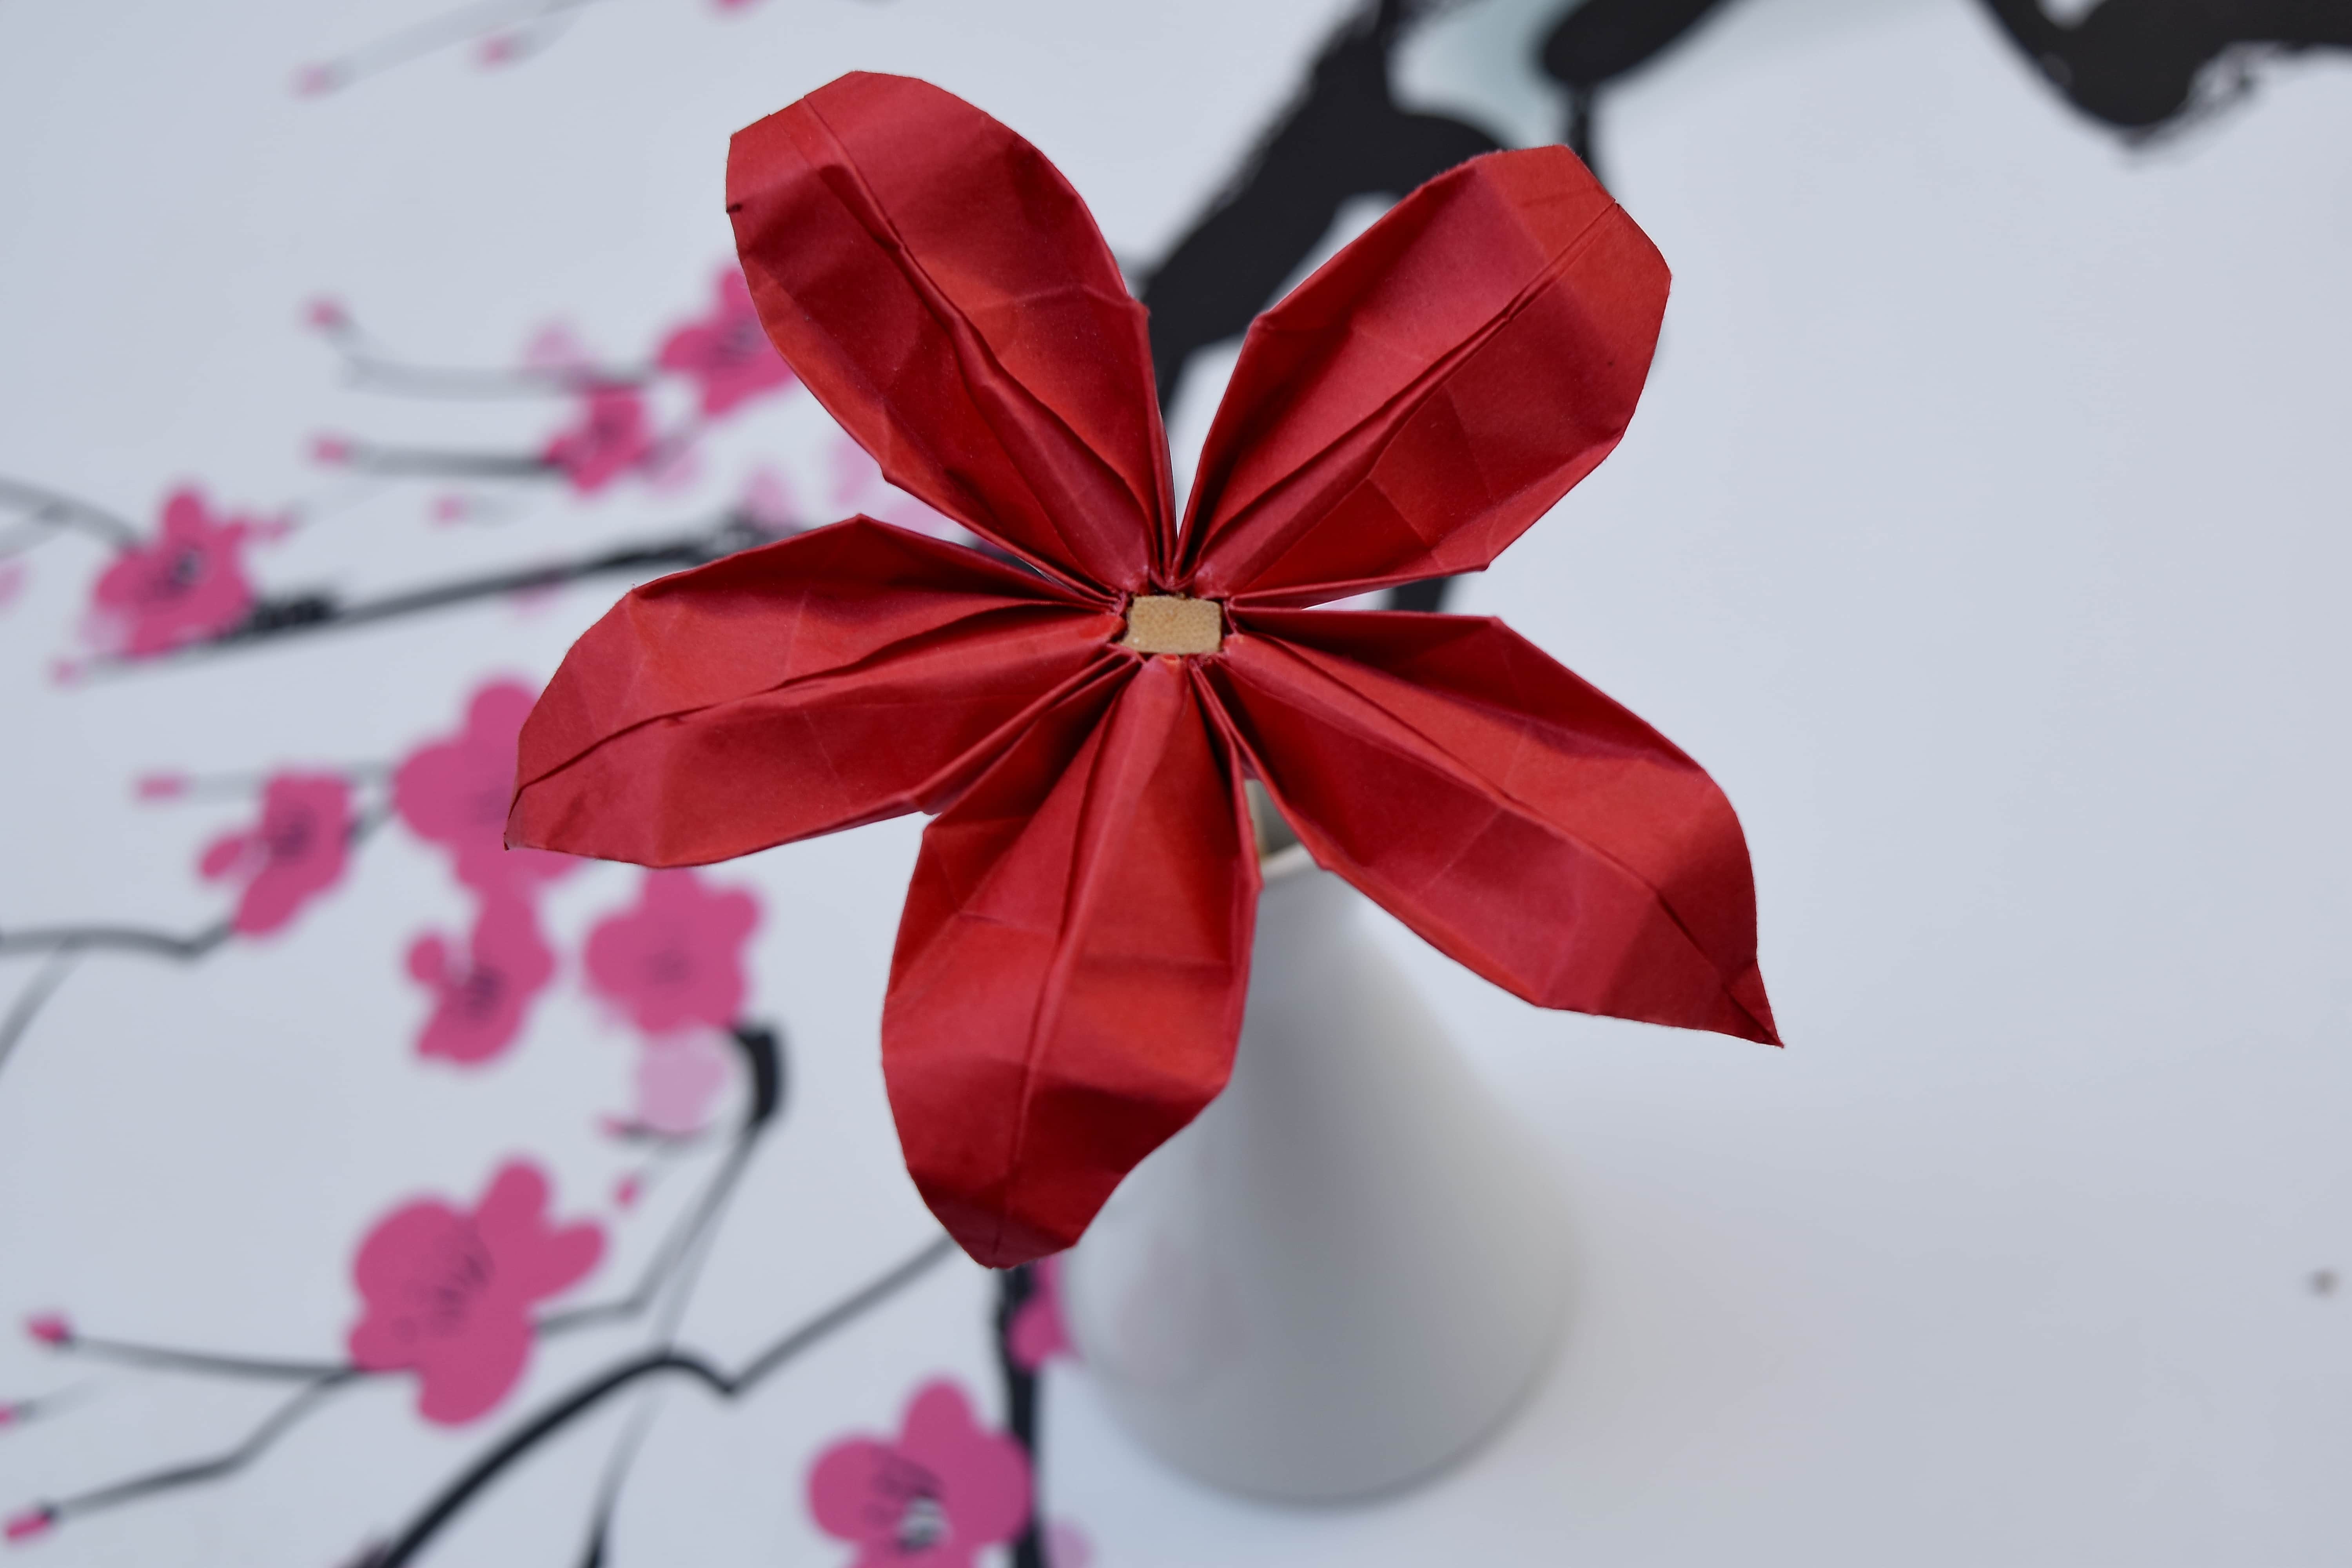 L'Atelier Créatif - Bouquet de fleurs en origami (Adultes) – Le Point  Virgule